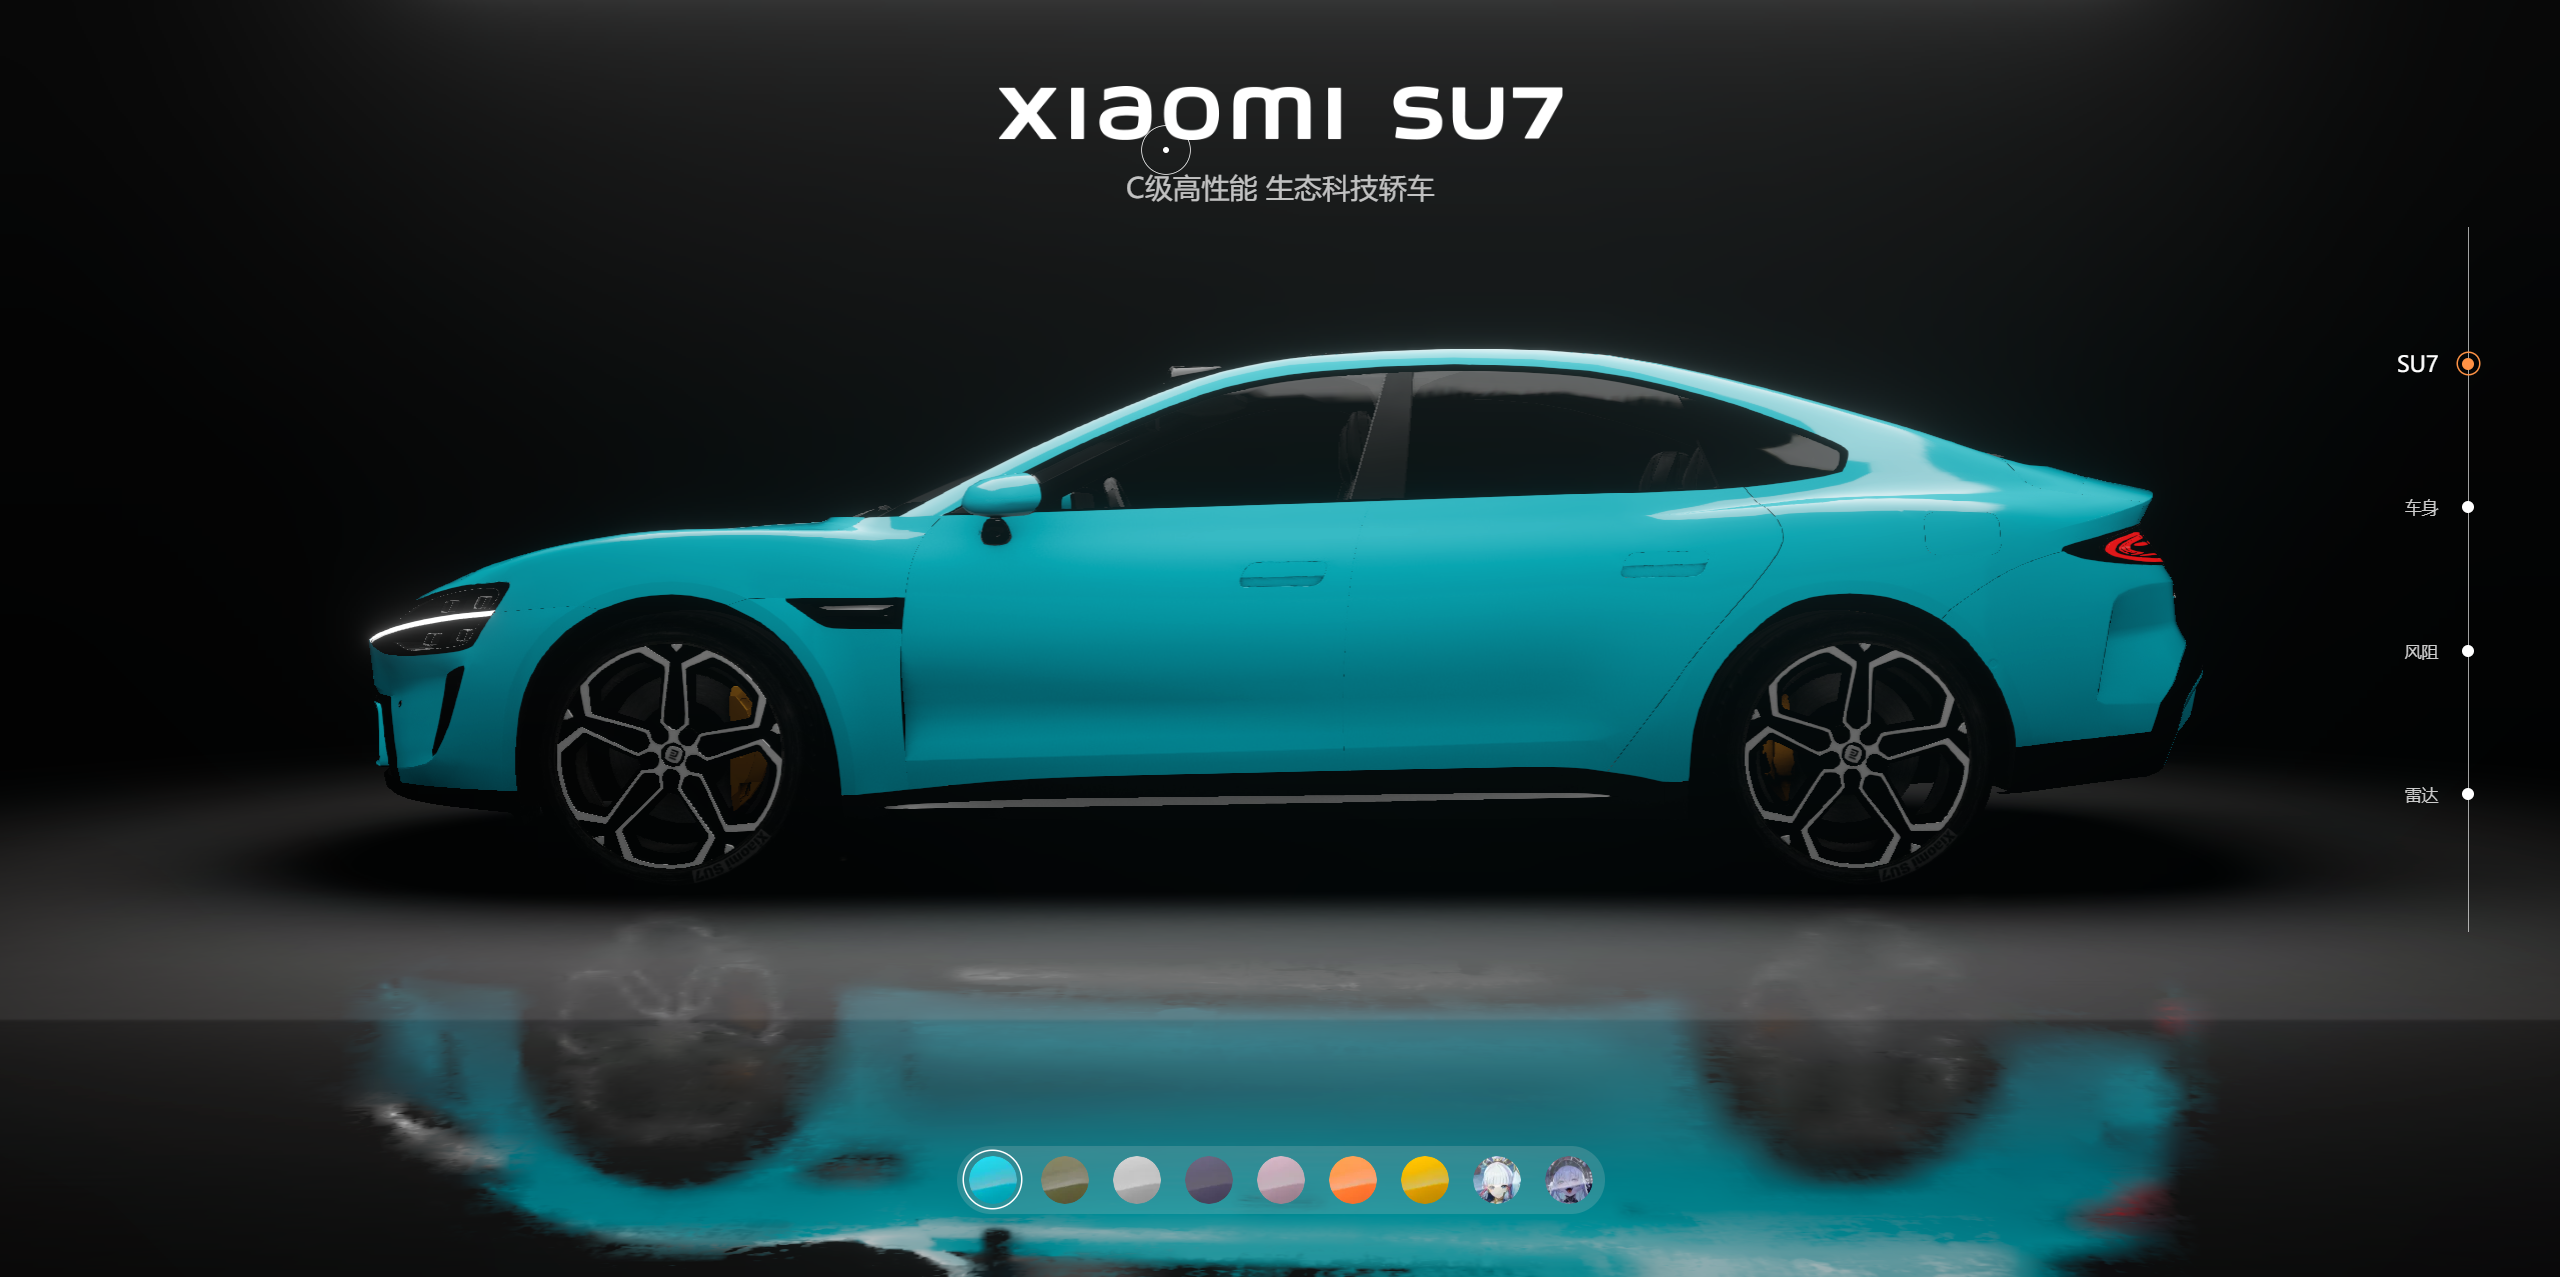 非常好看的响应式小米汽车su7全色系展示html源码-林天恒博客